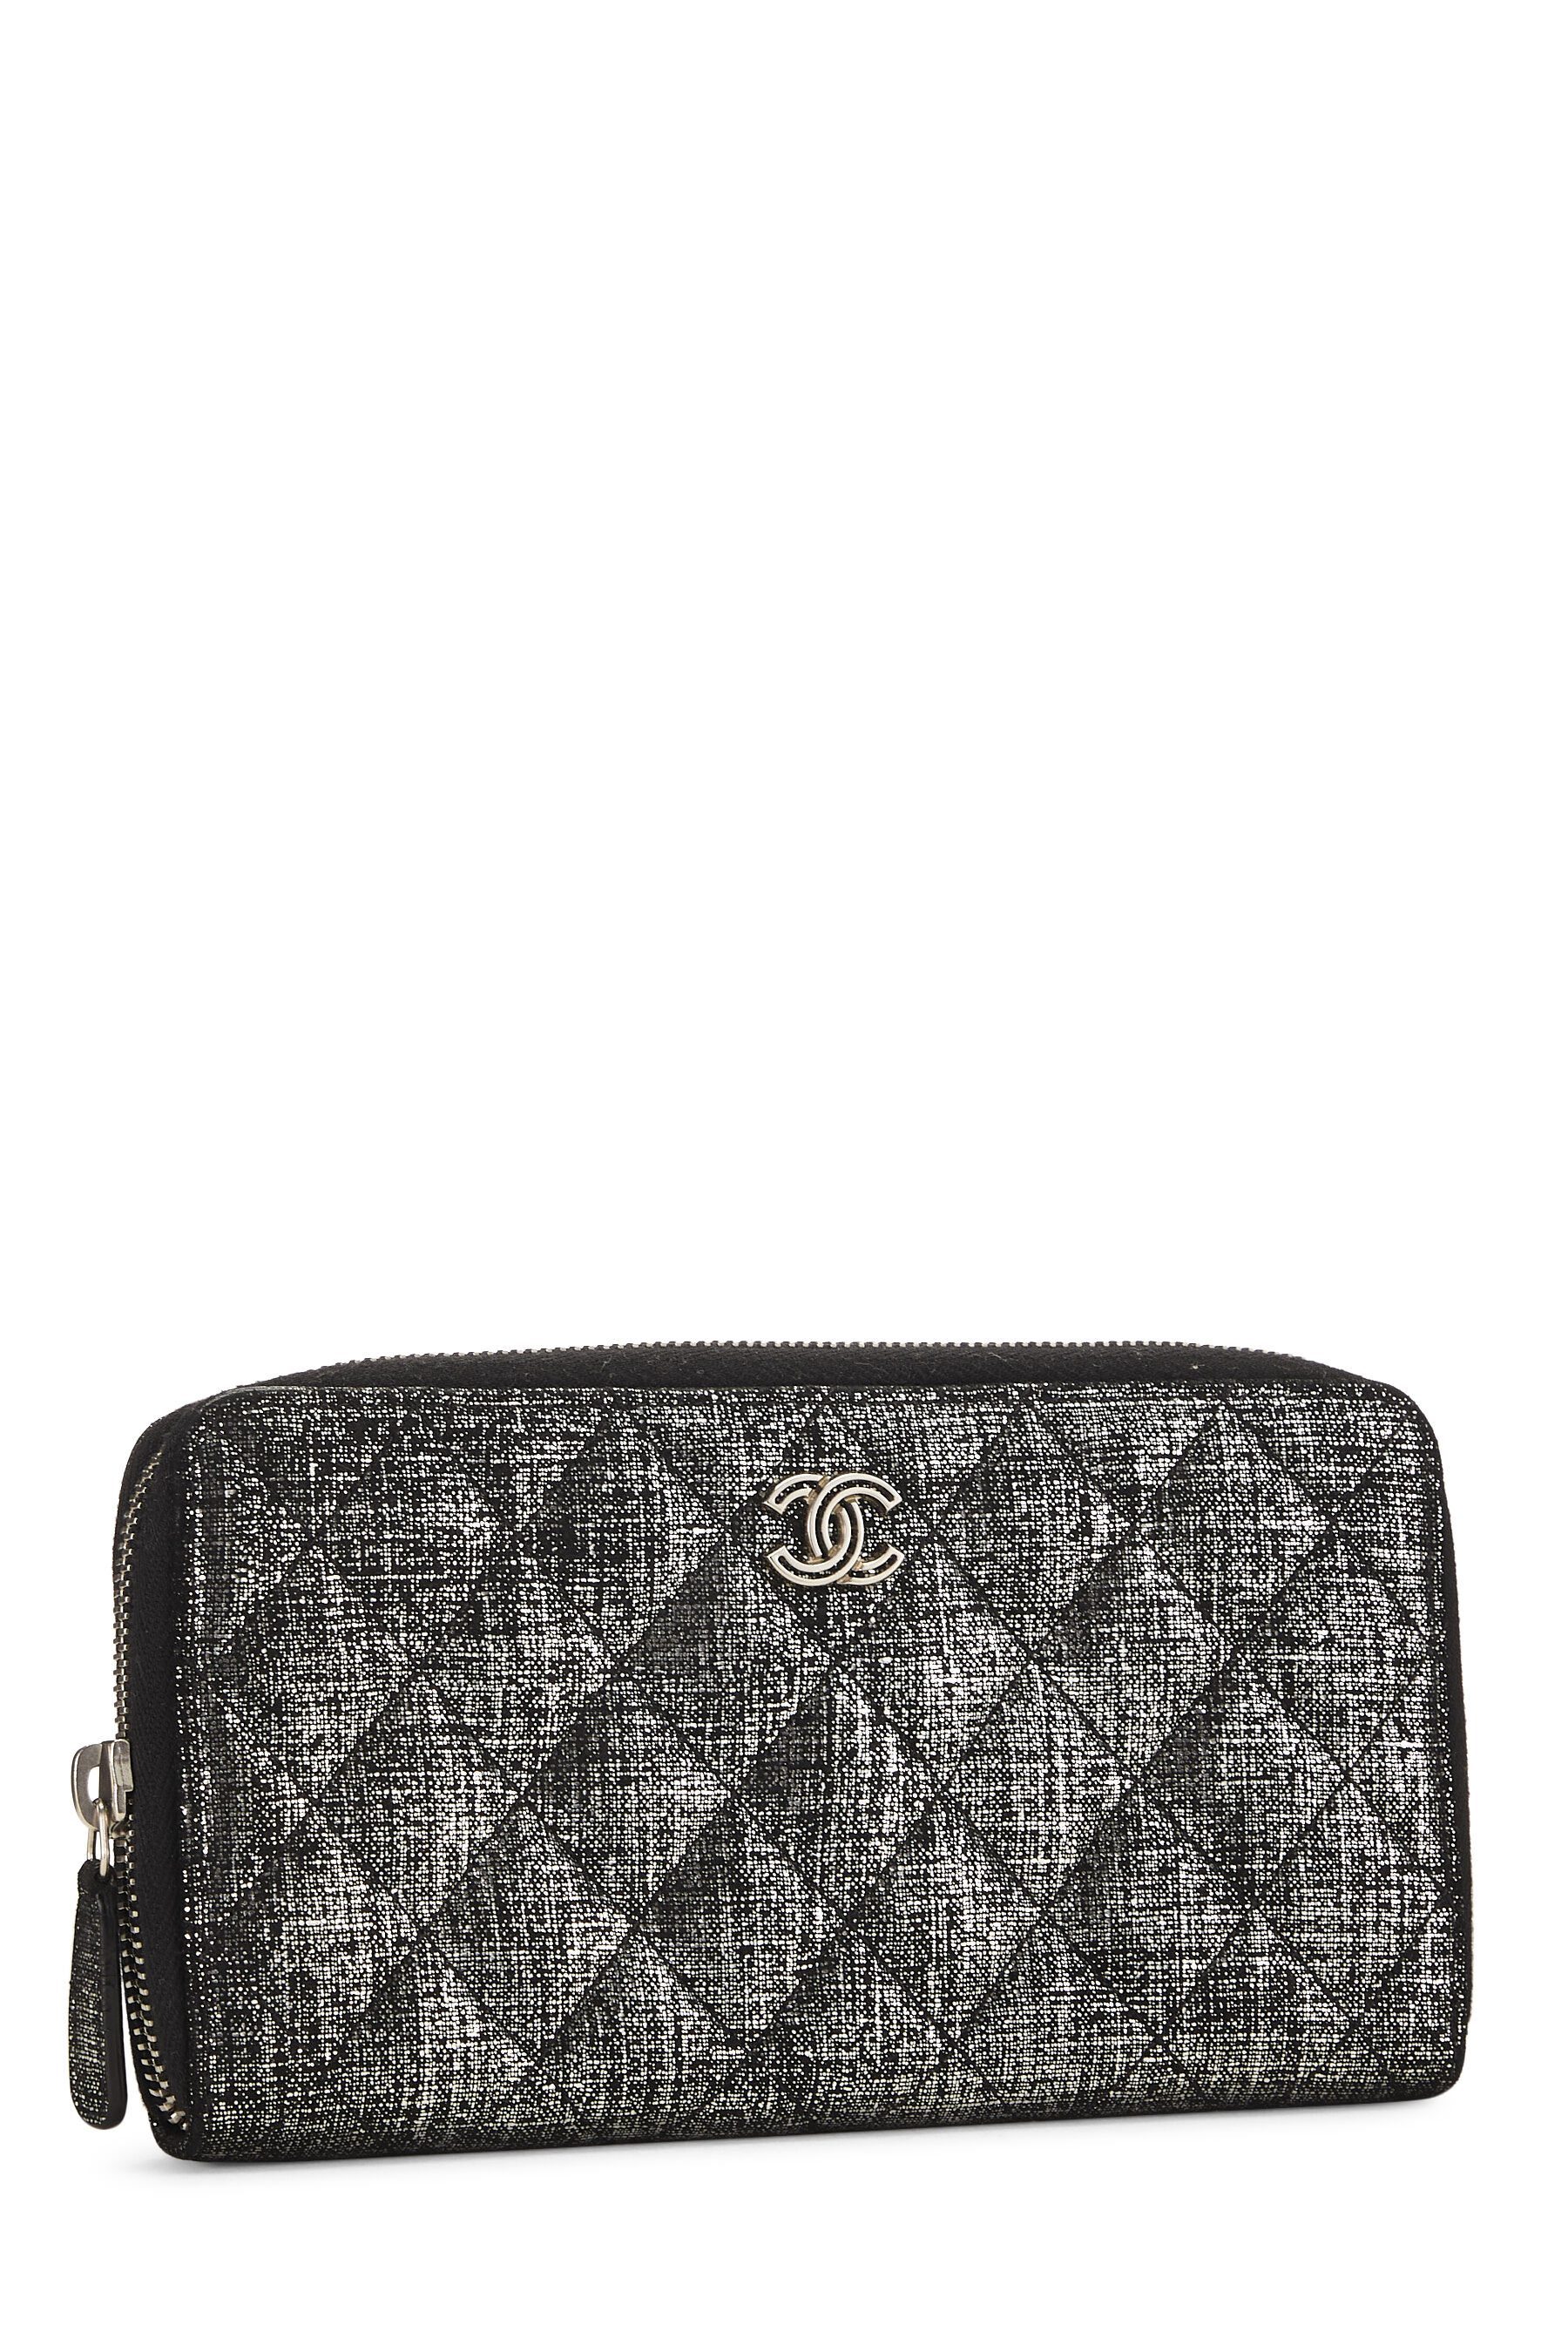 Chanel Metallic Silver & Black Zip-Around Wallet